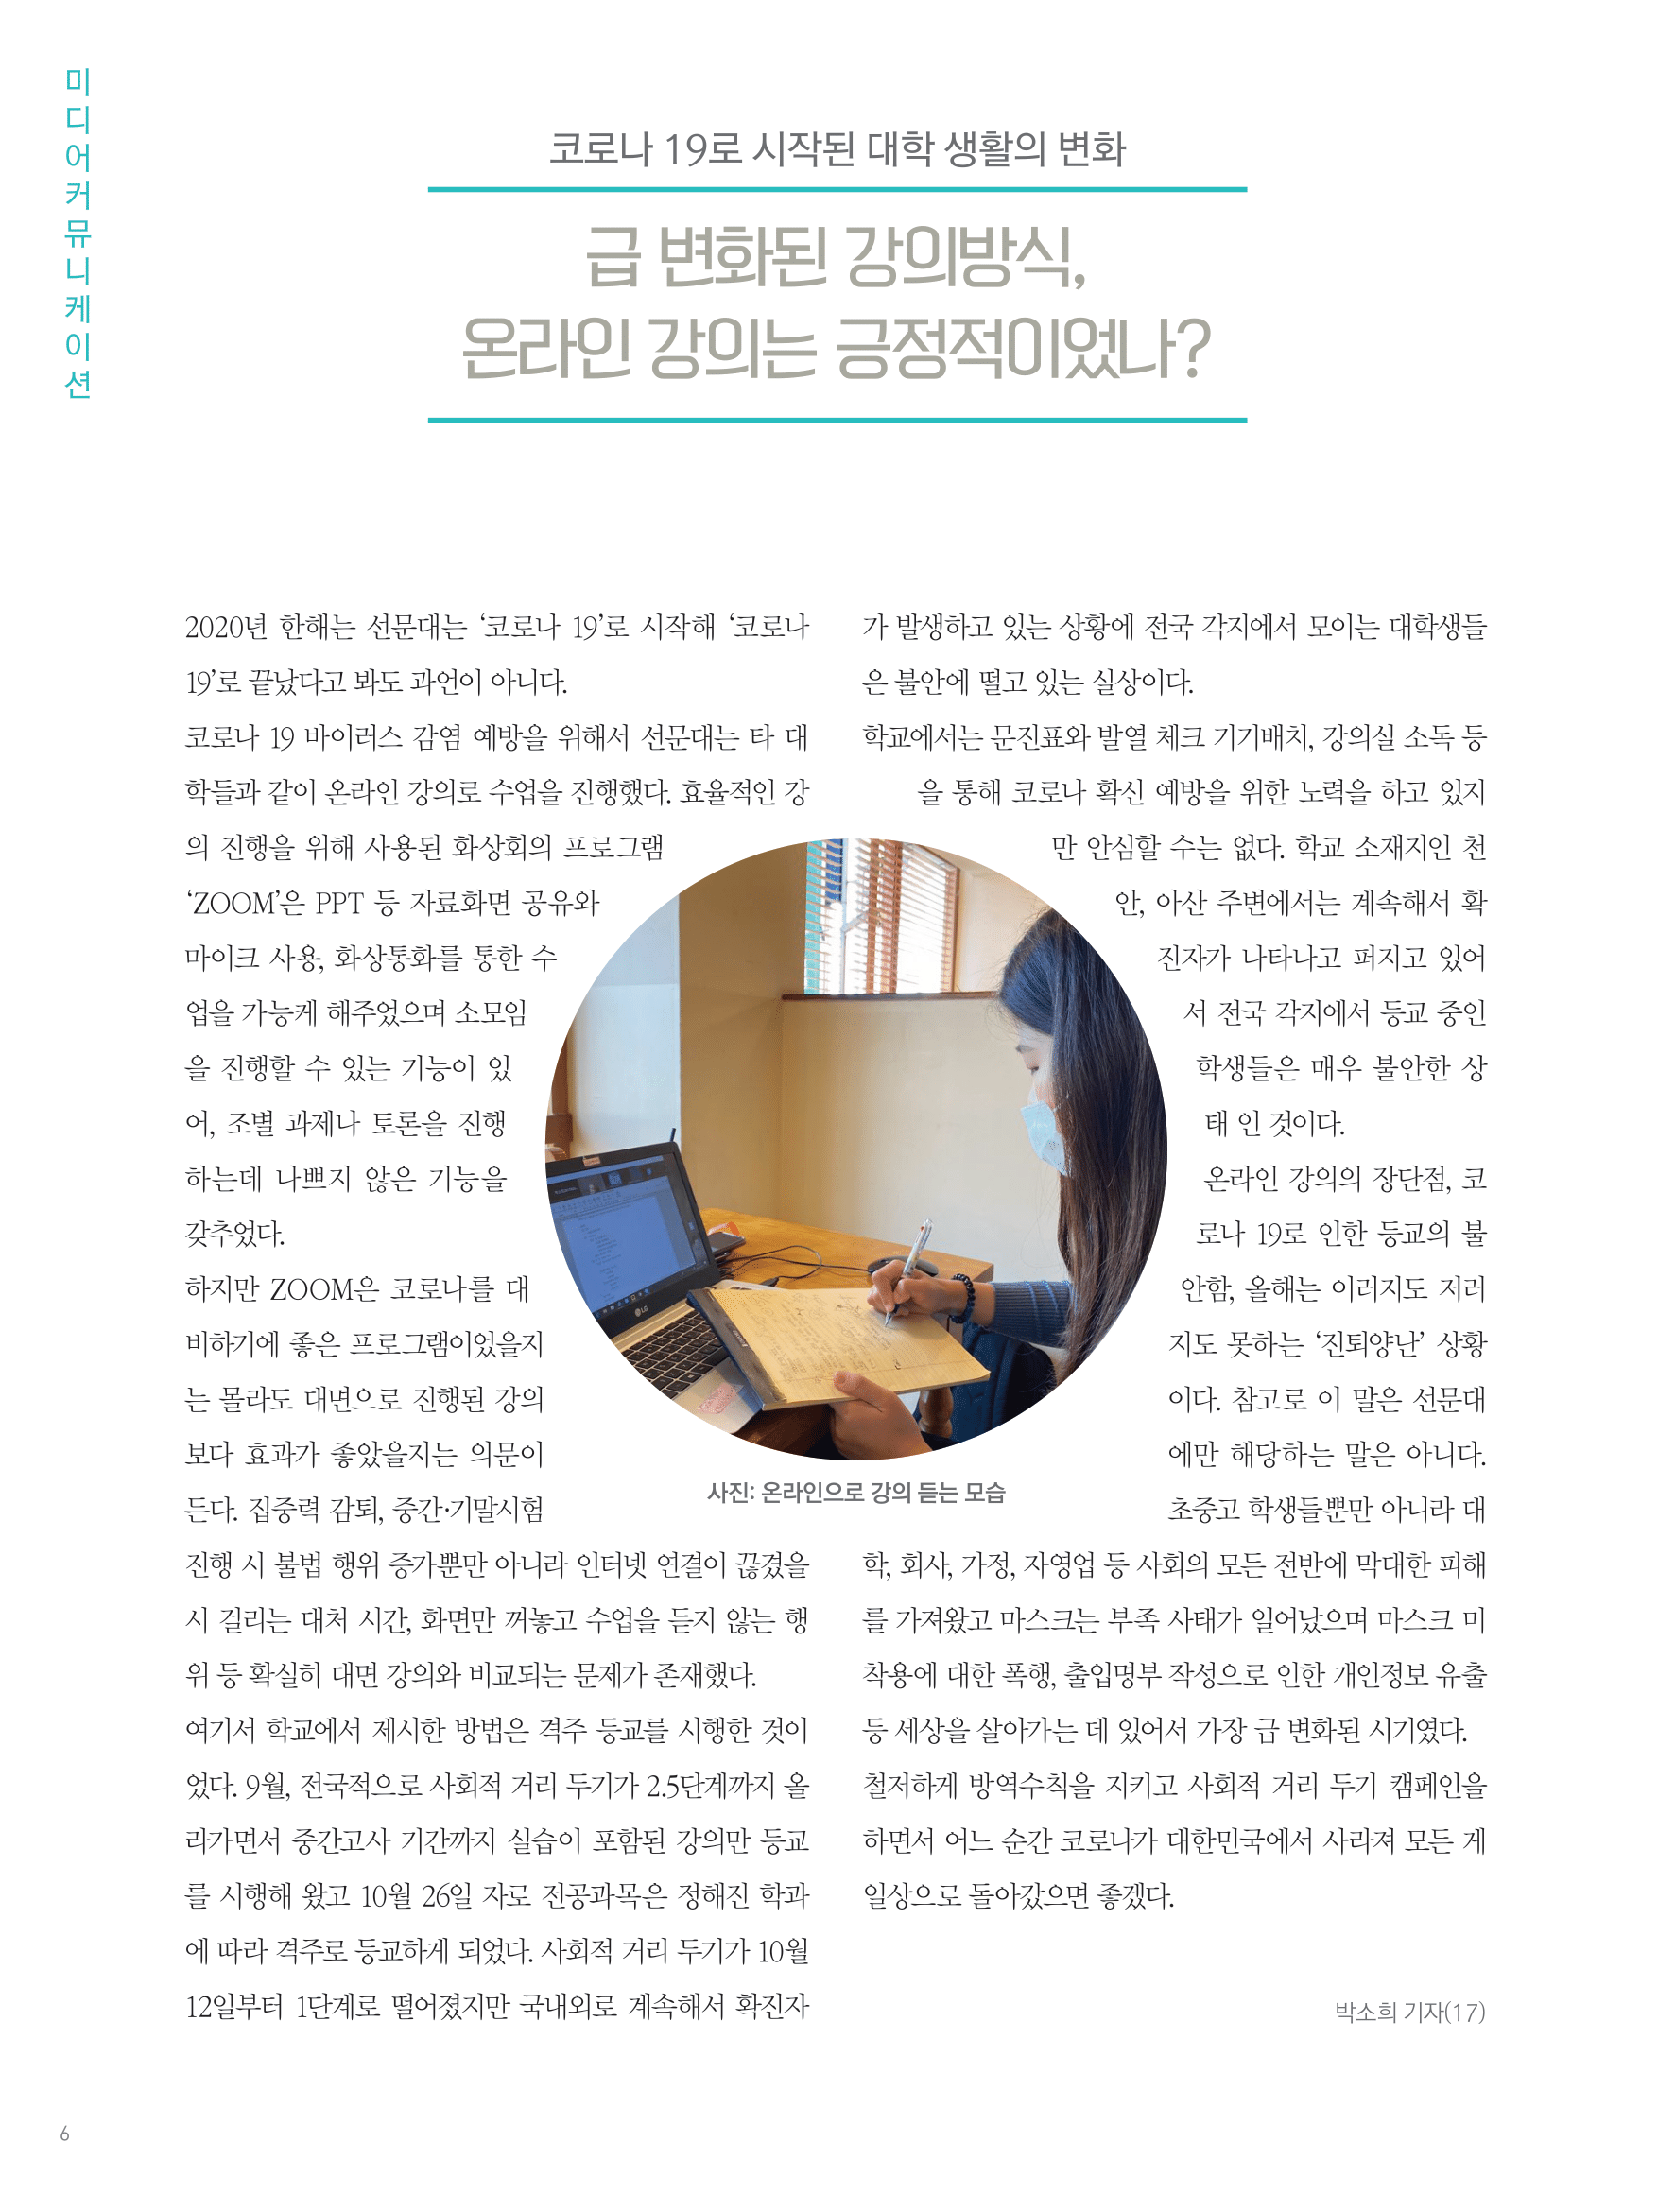 뜻새김 신문 76호 6